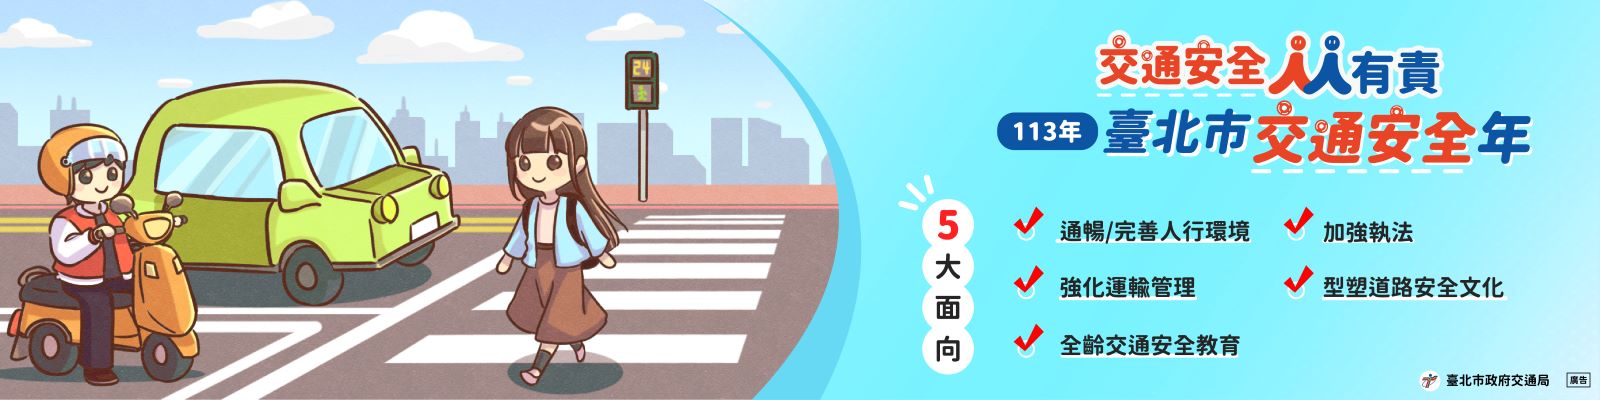 臺北市交通安全年